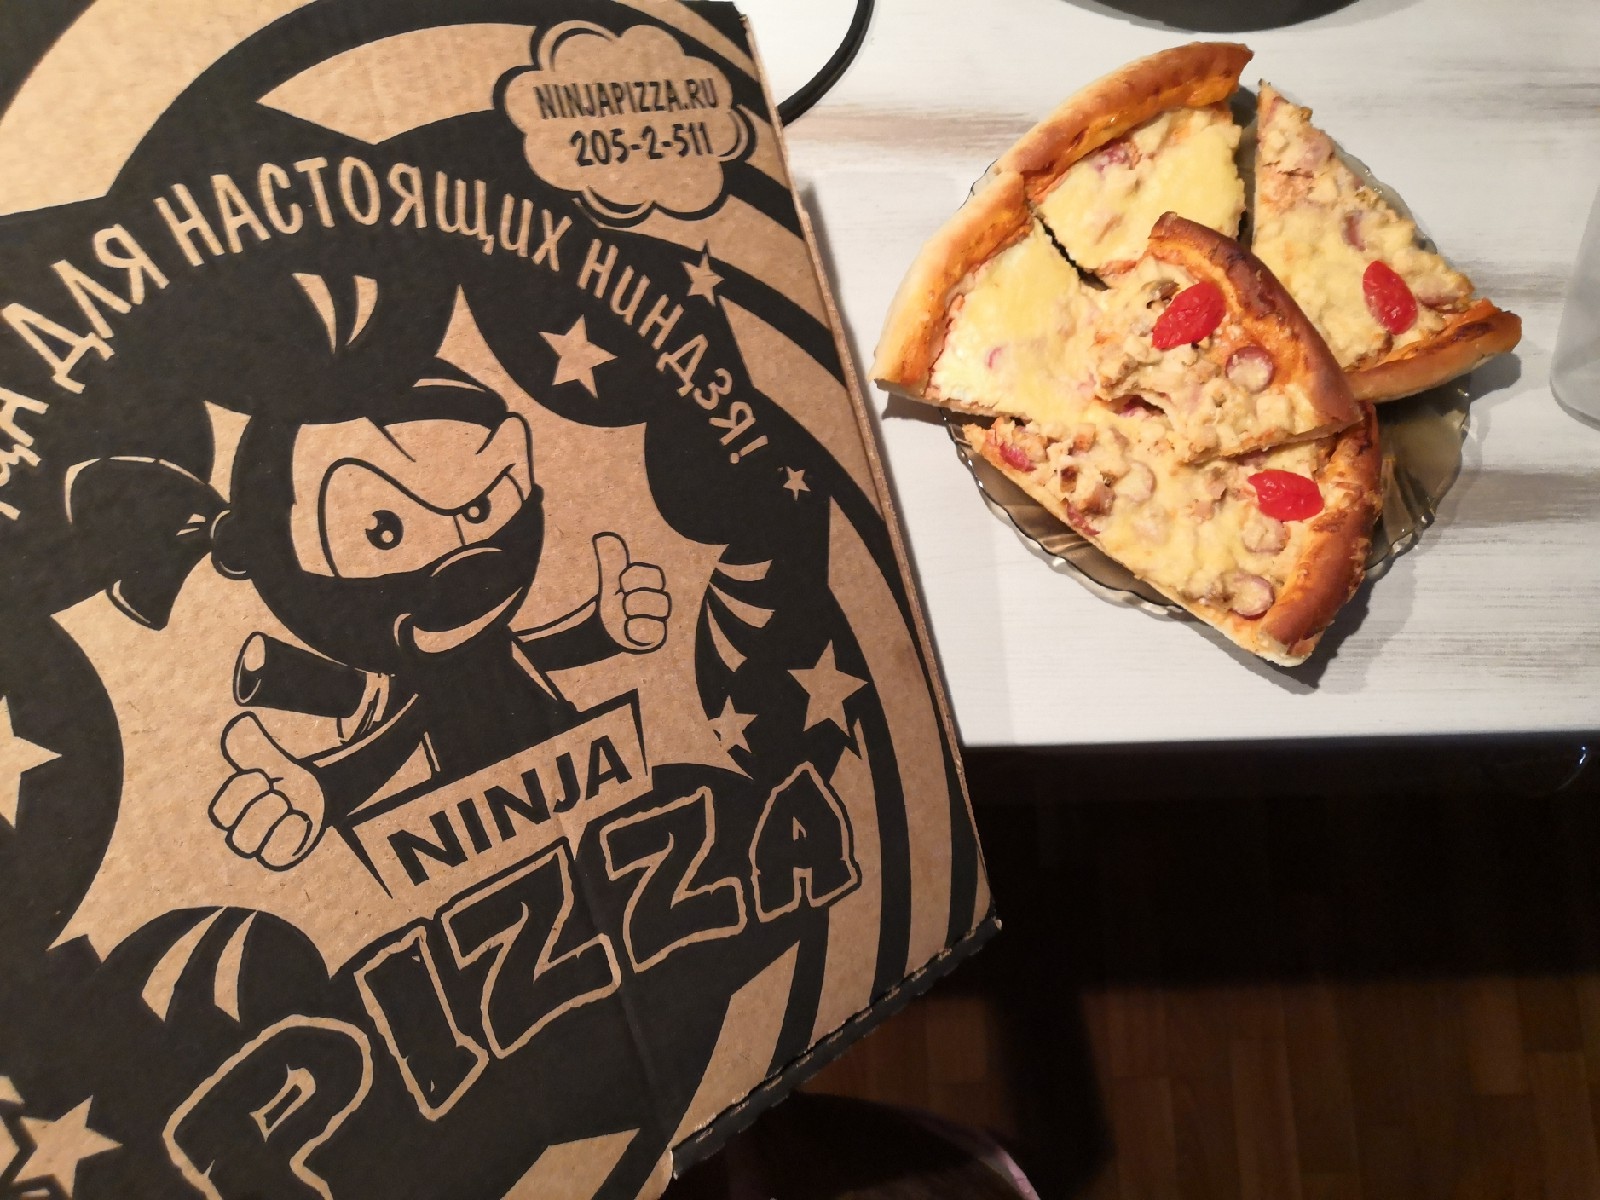 ниндзя пицца в красноярске режим работы фото 119